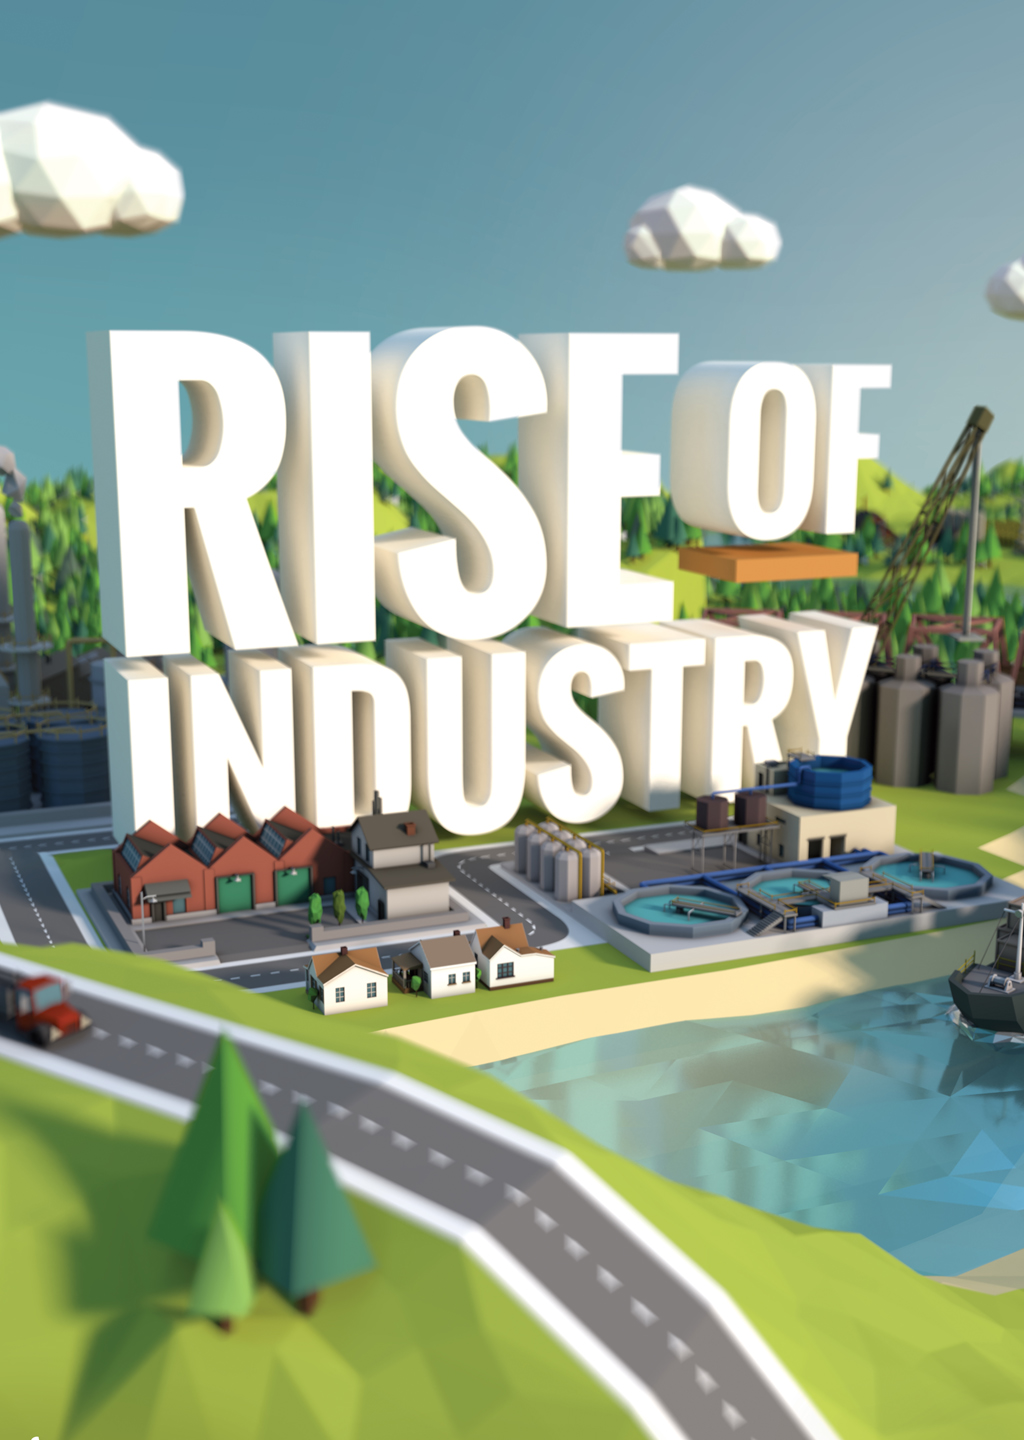 Rise of Industry, jogo de estratégia com impérios, está gratuito para PC